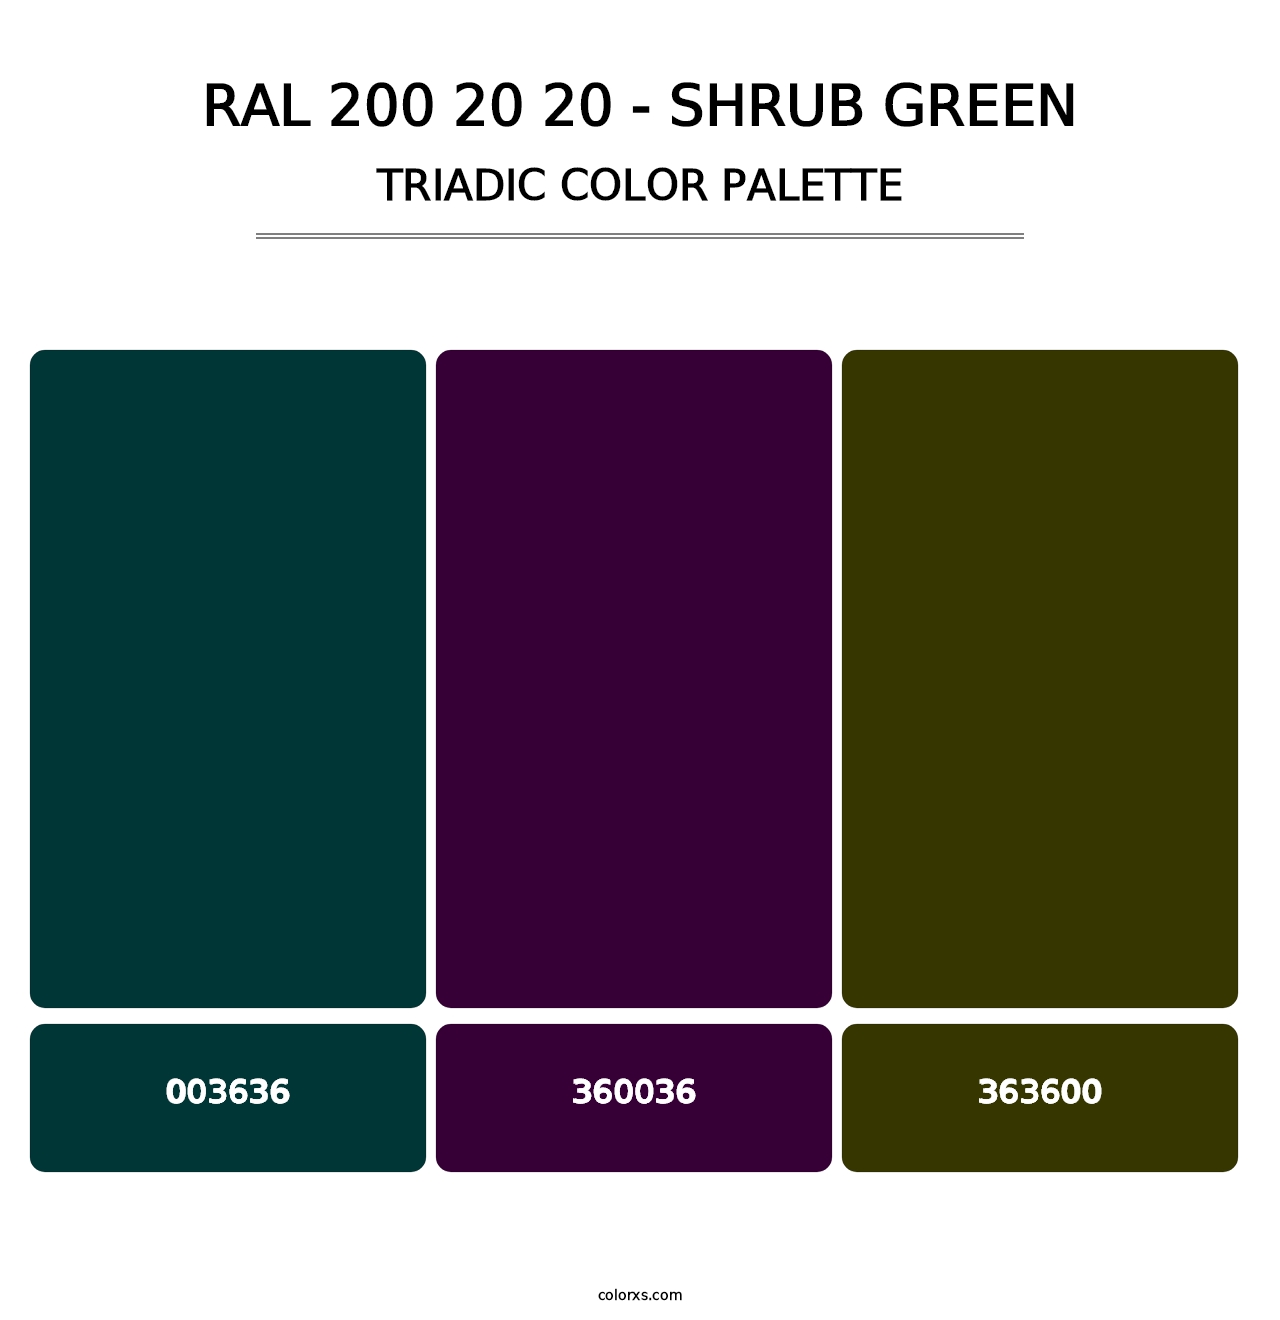 RAL 200 20 20 - Shrub Green - Triadic Color Palette